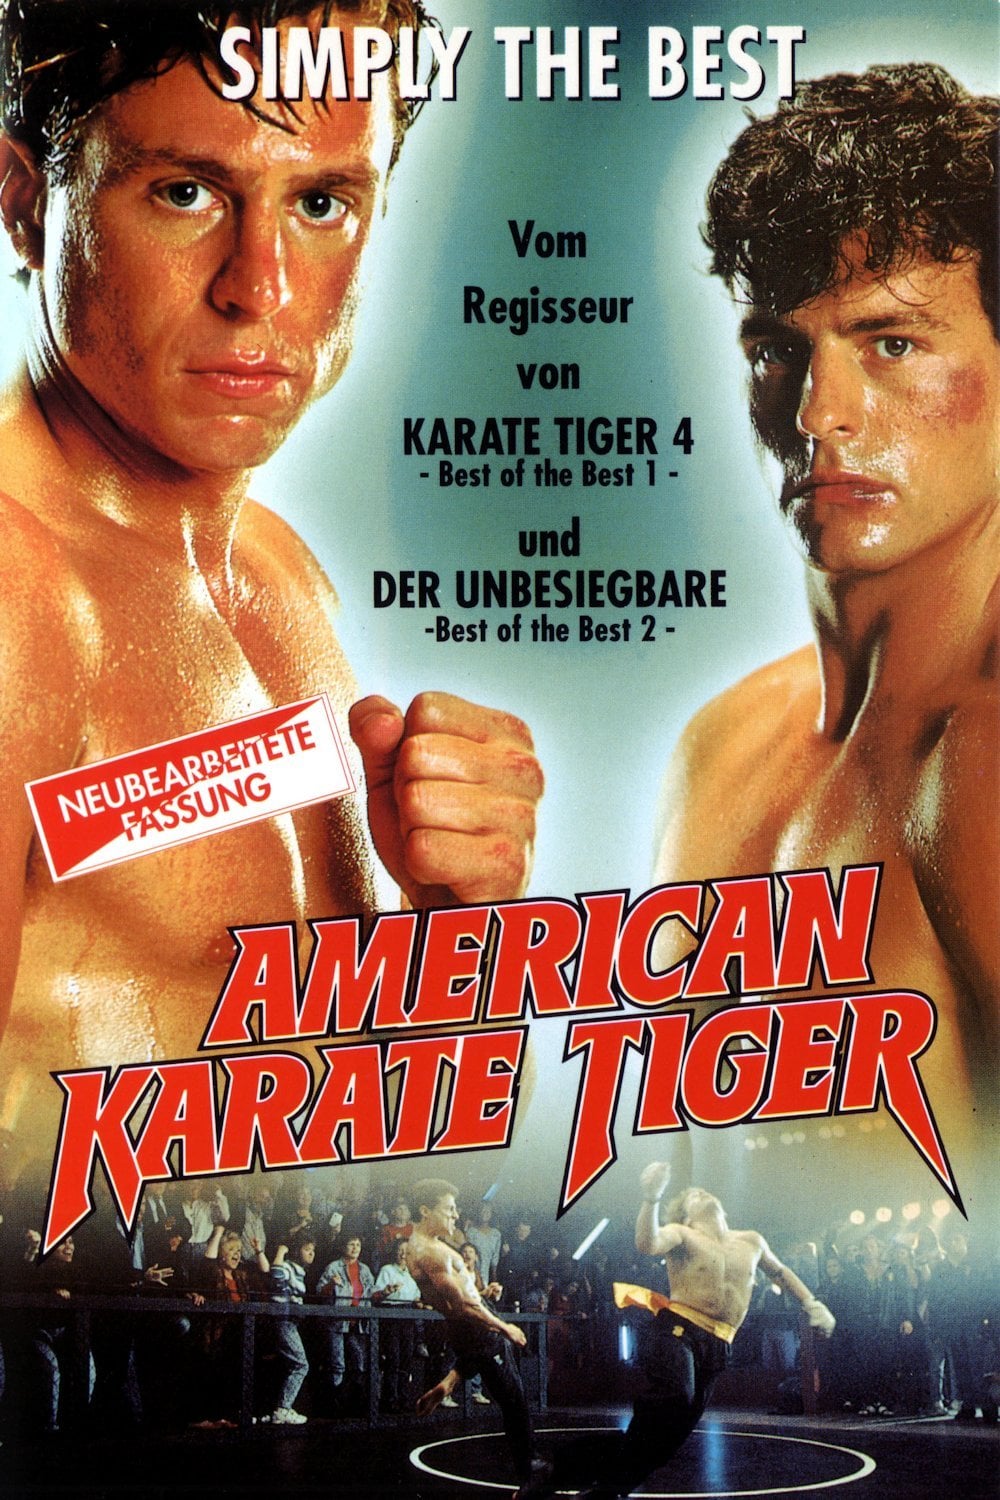 Plakat von "American Karate Tiger"